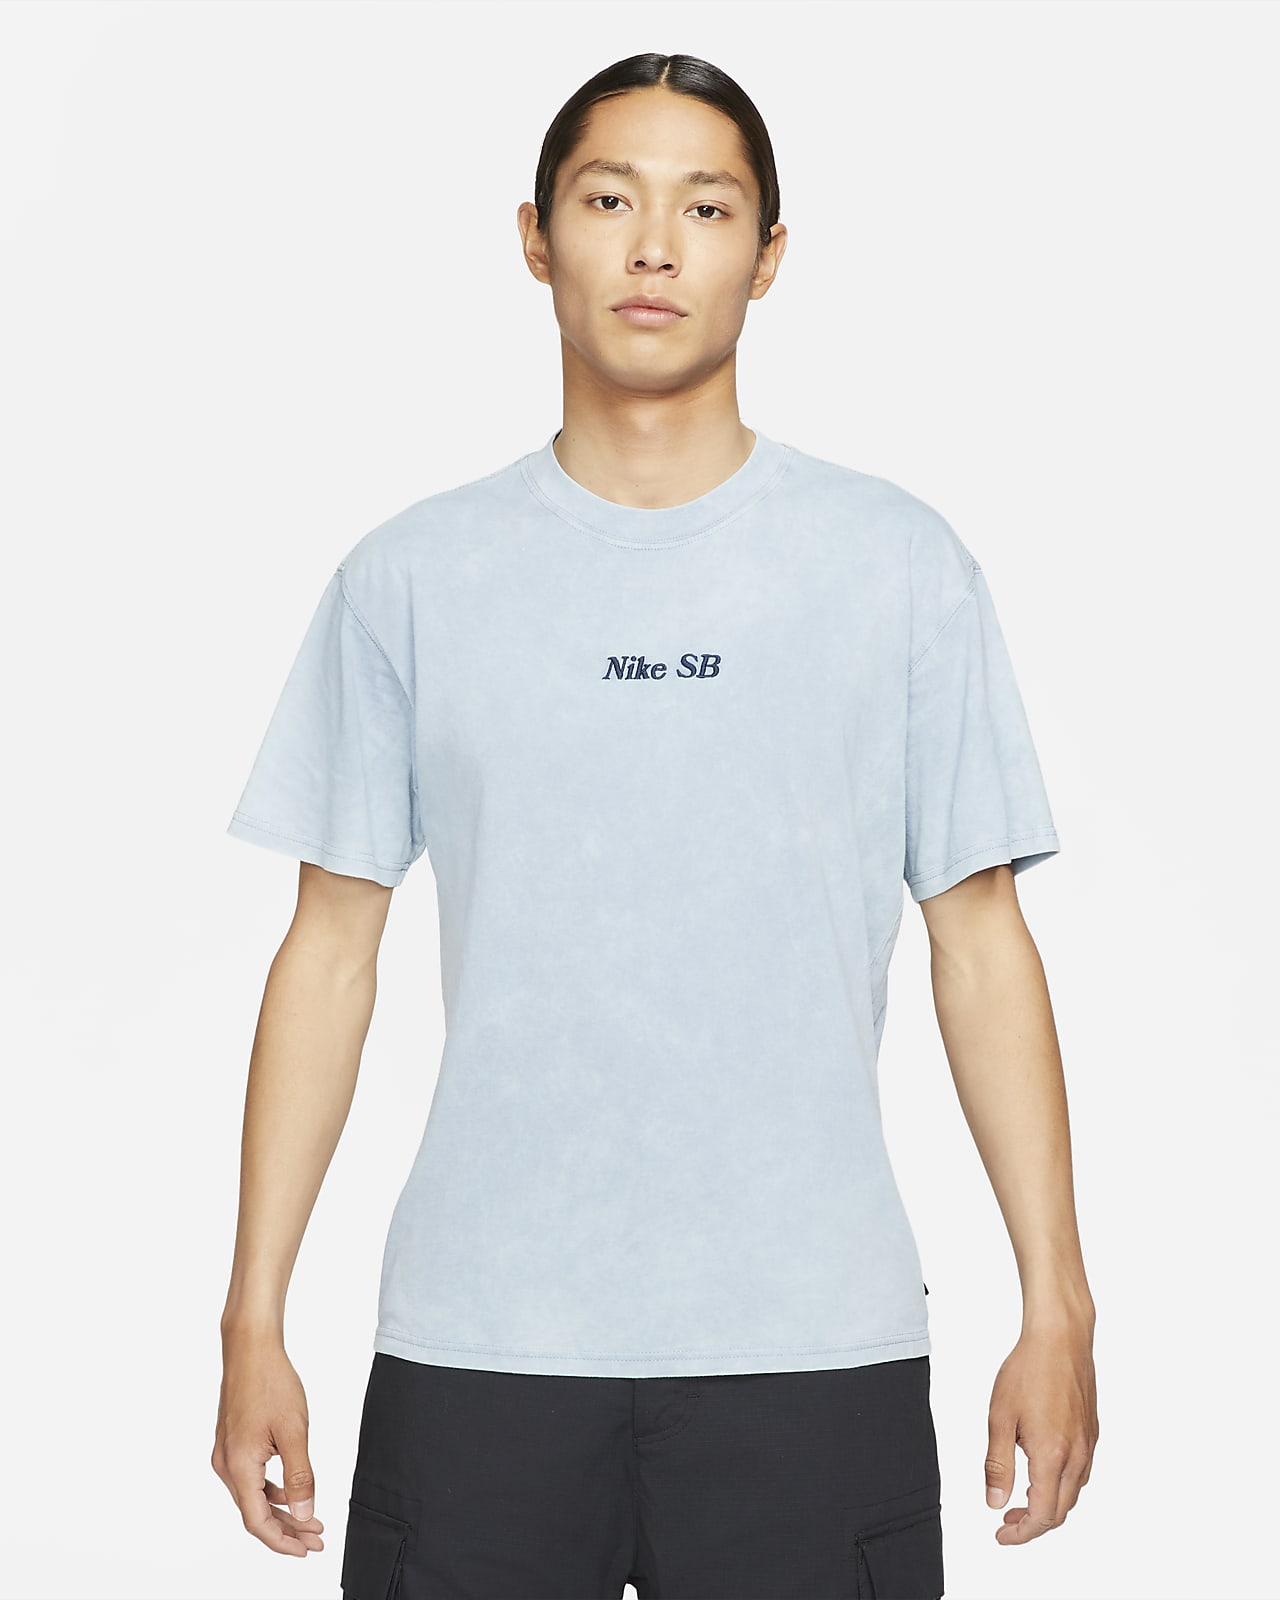 Nike公式 ナイキ Sb ウォッシュド スケートボード Tシャツ オンラインストア 通販サイト